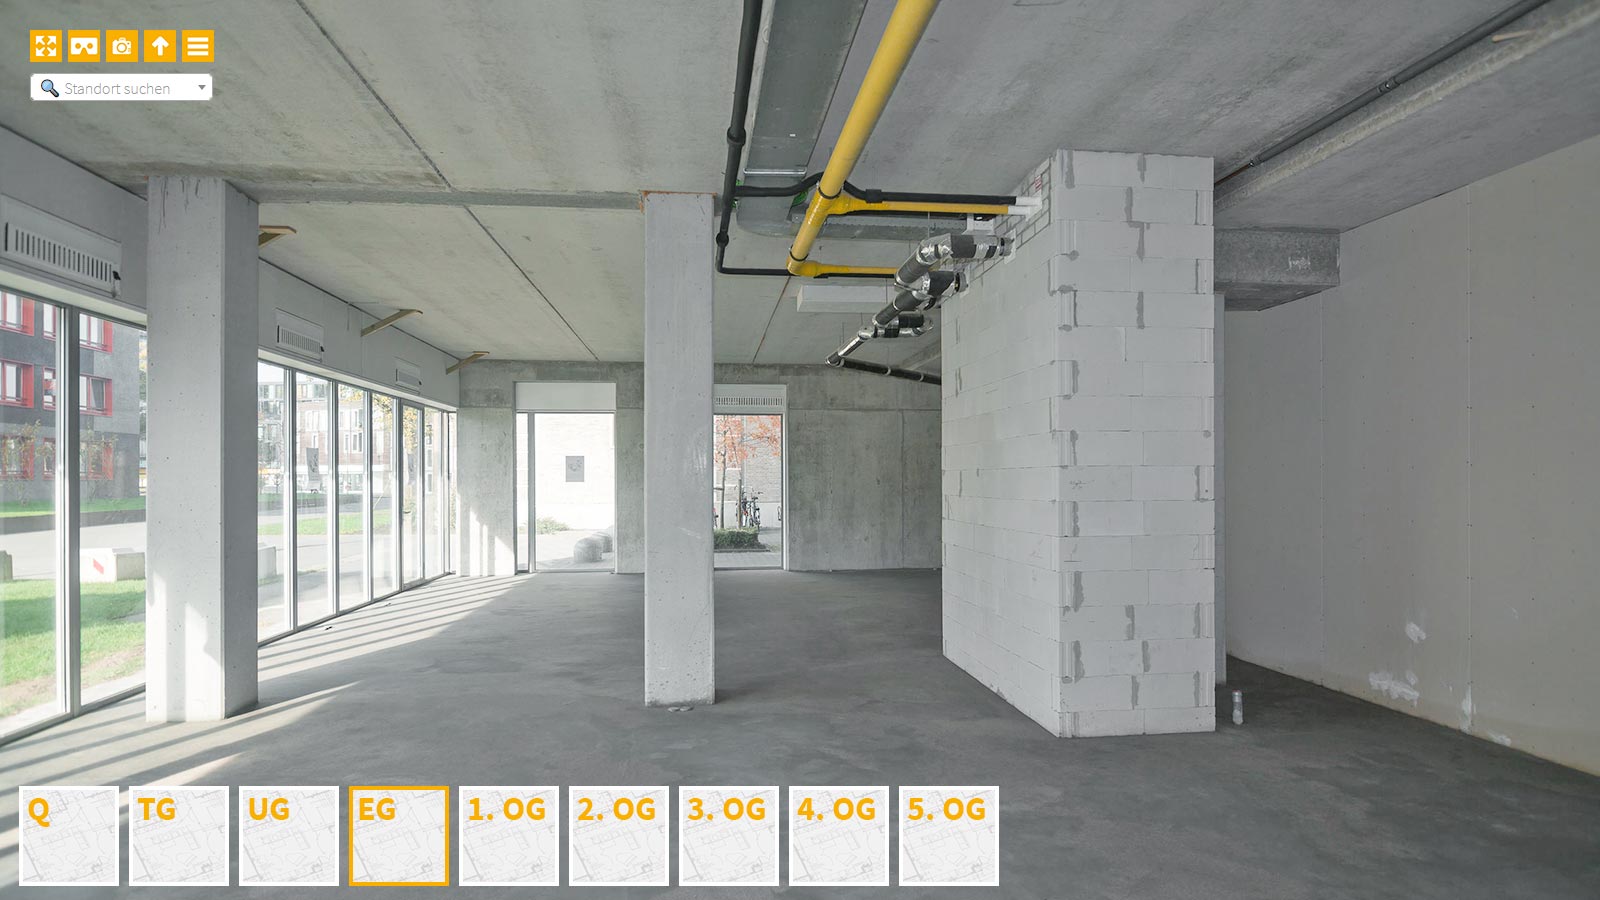 Baudokumentation 360 Grad bei gestörten Projekten in 


	


	


	


	


	


	


	


	


	


	Leipzig









, Bilddokumentation als virtueller Rundgang